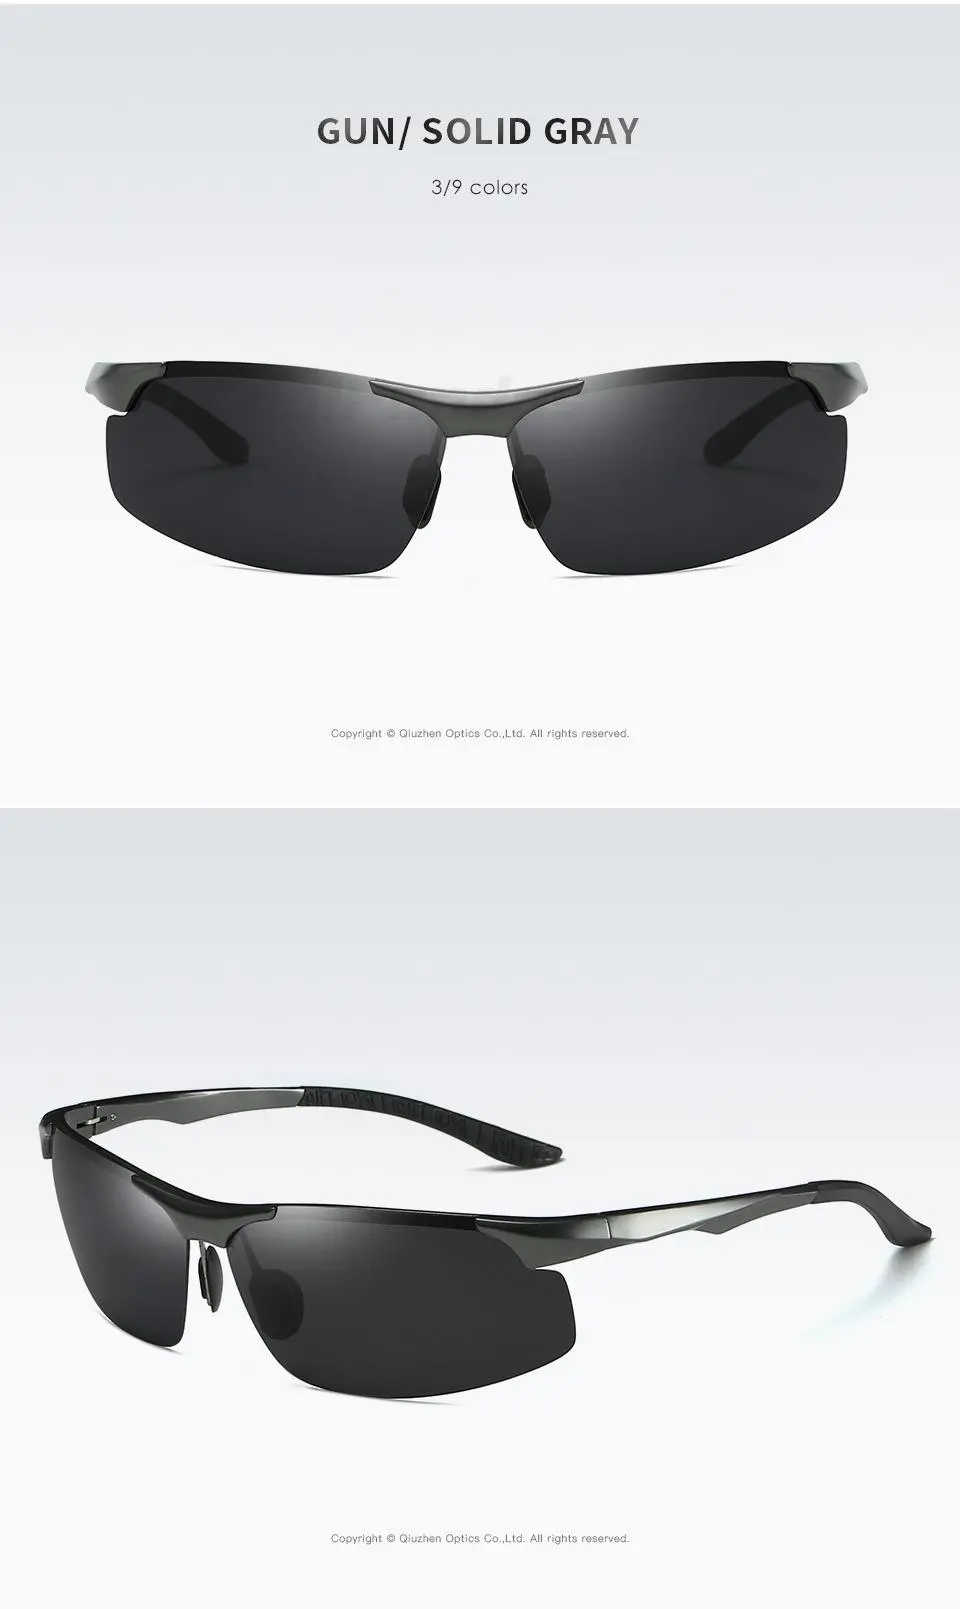 Gafas de sol fotocromáticas polarizadas HD de aluminio para hombre, gafas de sol masculinas para conducir, gafas deportivas para exteriores, gafas Anti-UV